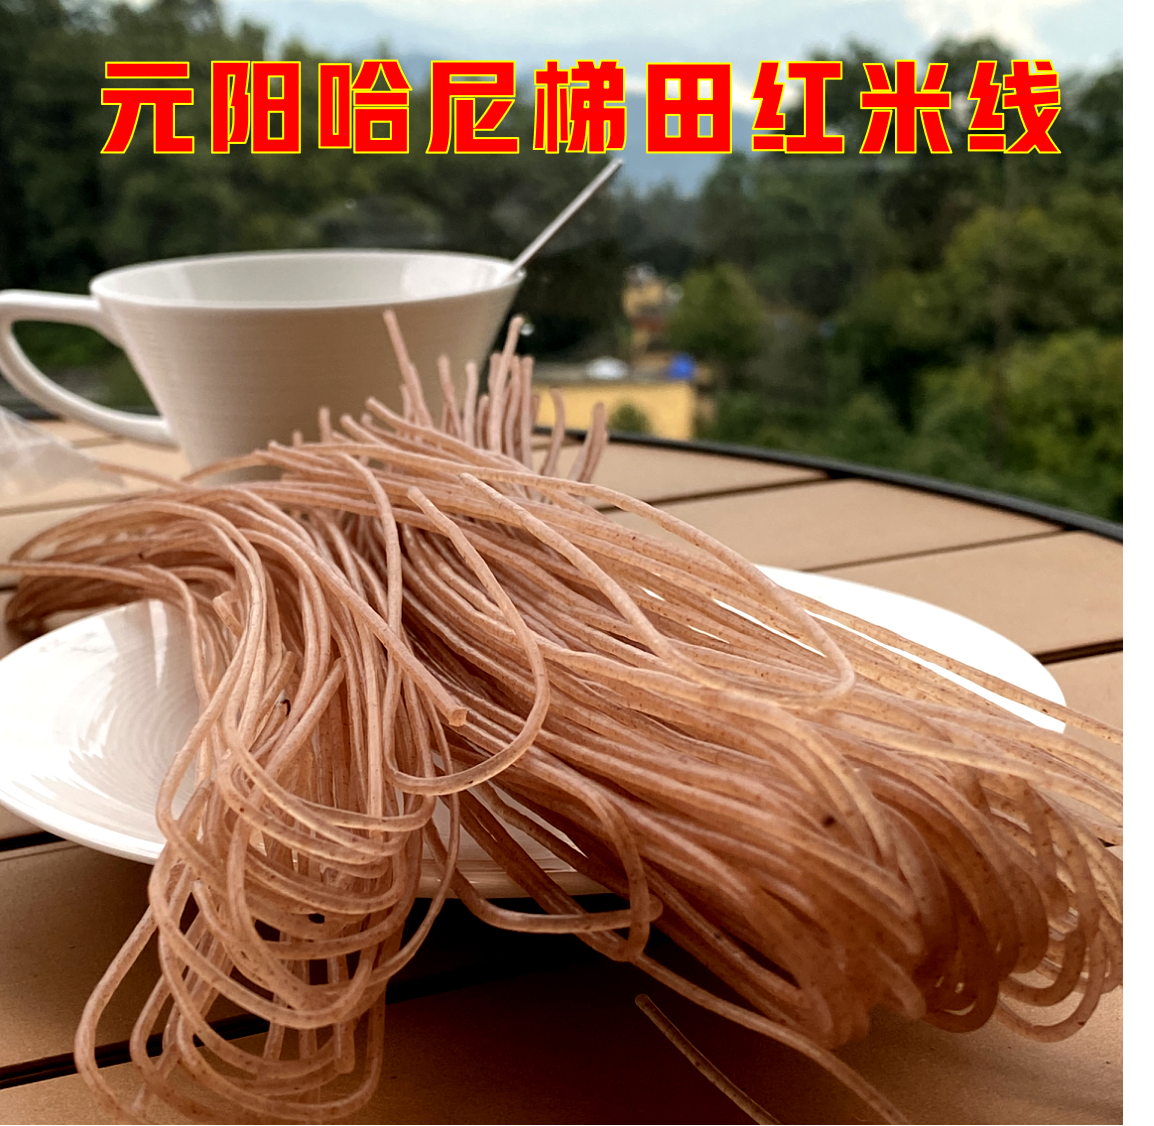 云南元阳哈尼梯田红米线干米线健康原生态食品